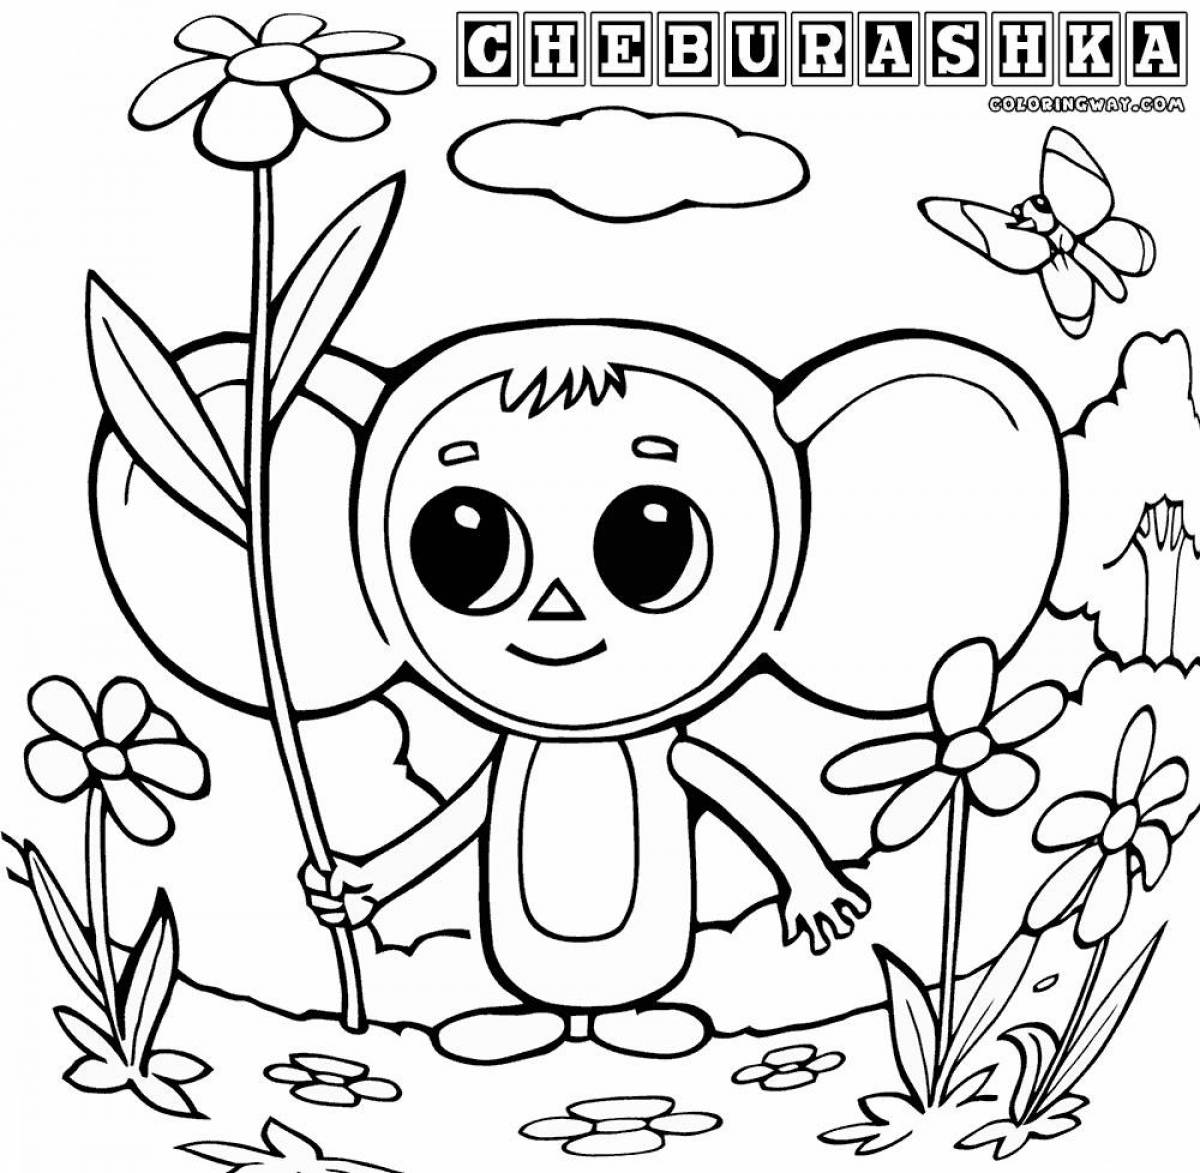 Cartoon cheburashka from cartoon